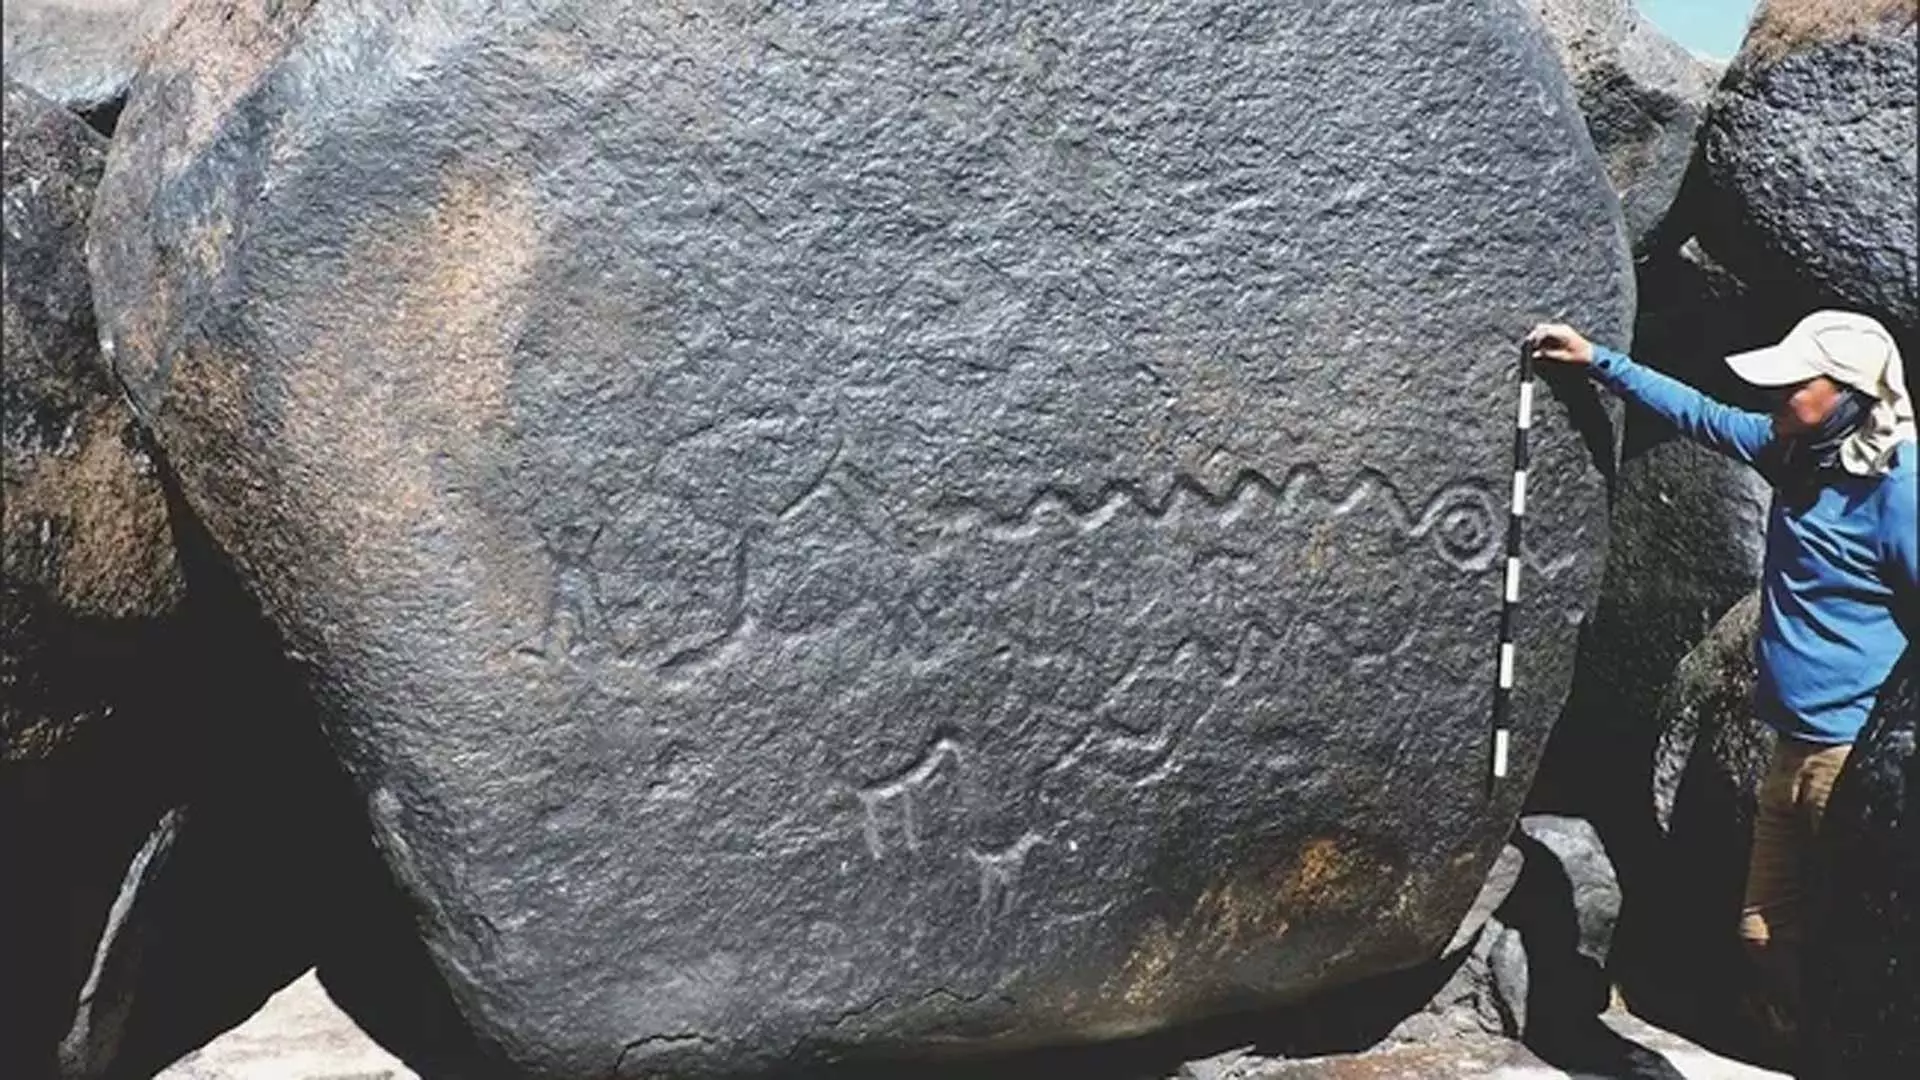 SCIENCE: 2,000 साल पुरानी चट्टान कलाकृतियाँ, जिनमें लगभग 140 फुट लंबा साँप भी शामिल